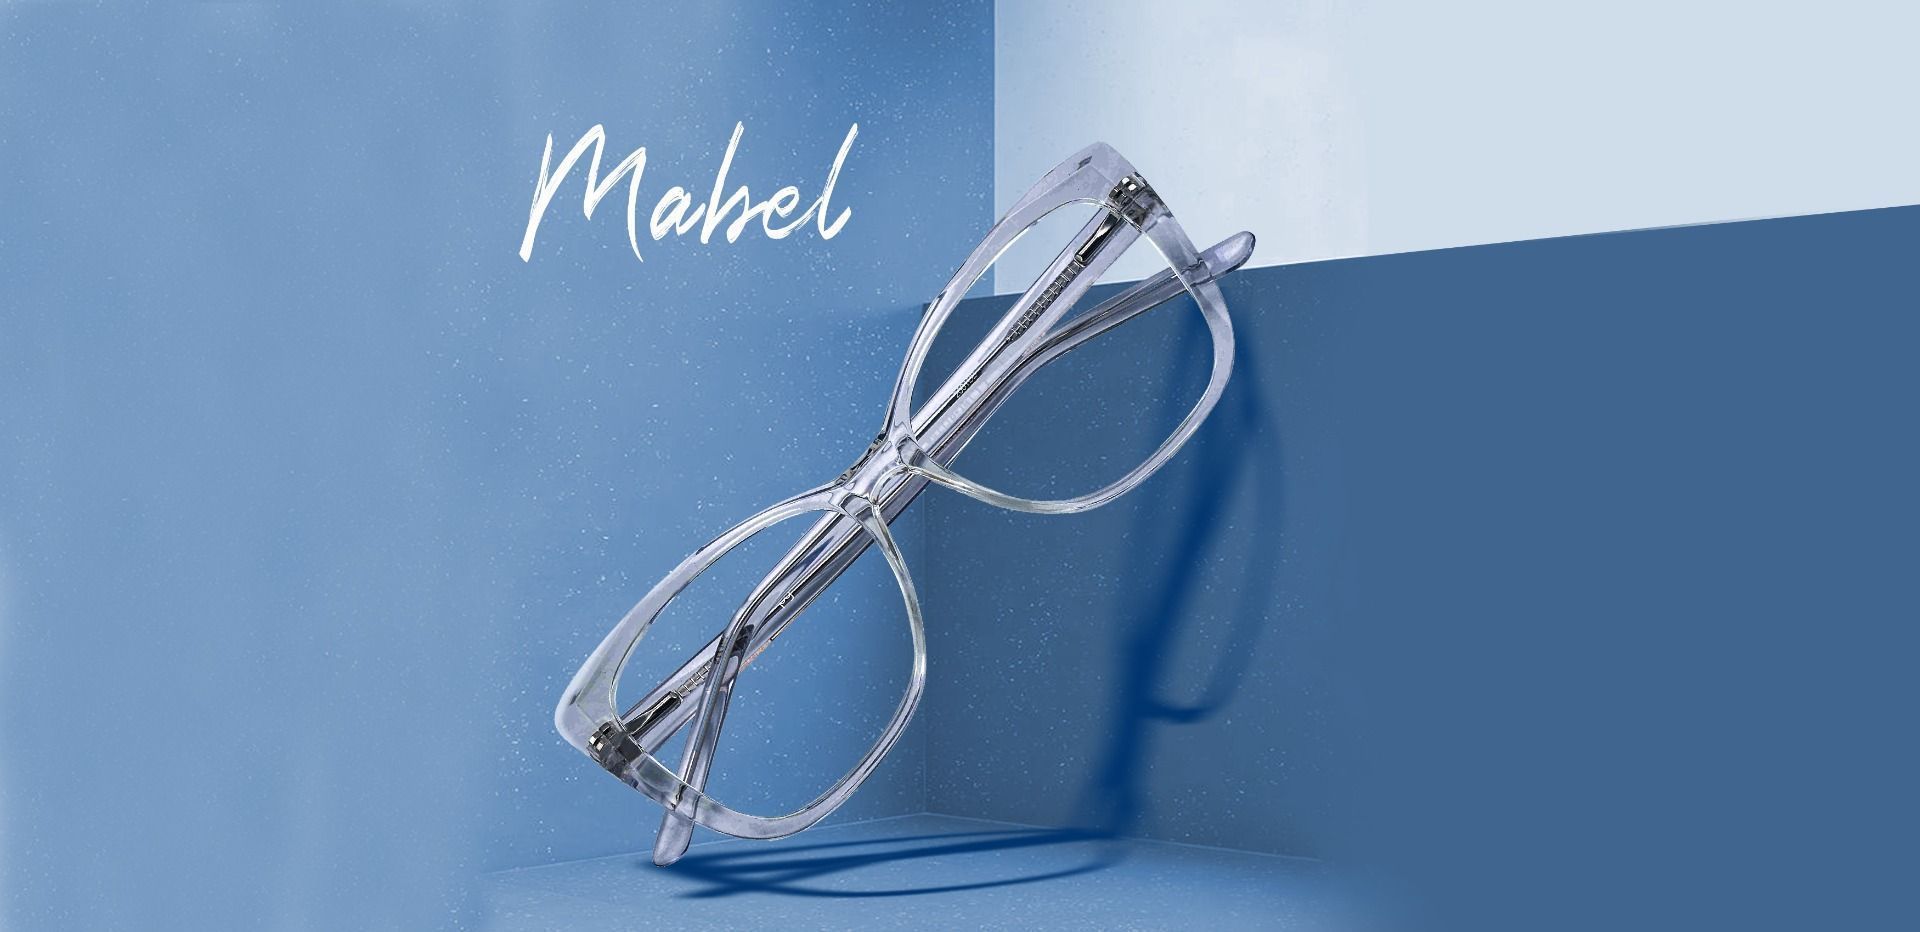 Mabel Square Prescription Glasses - Clear